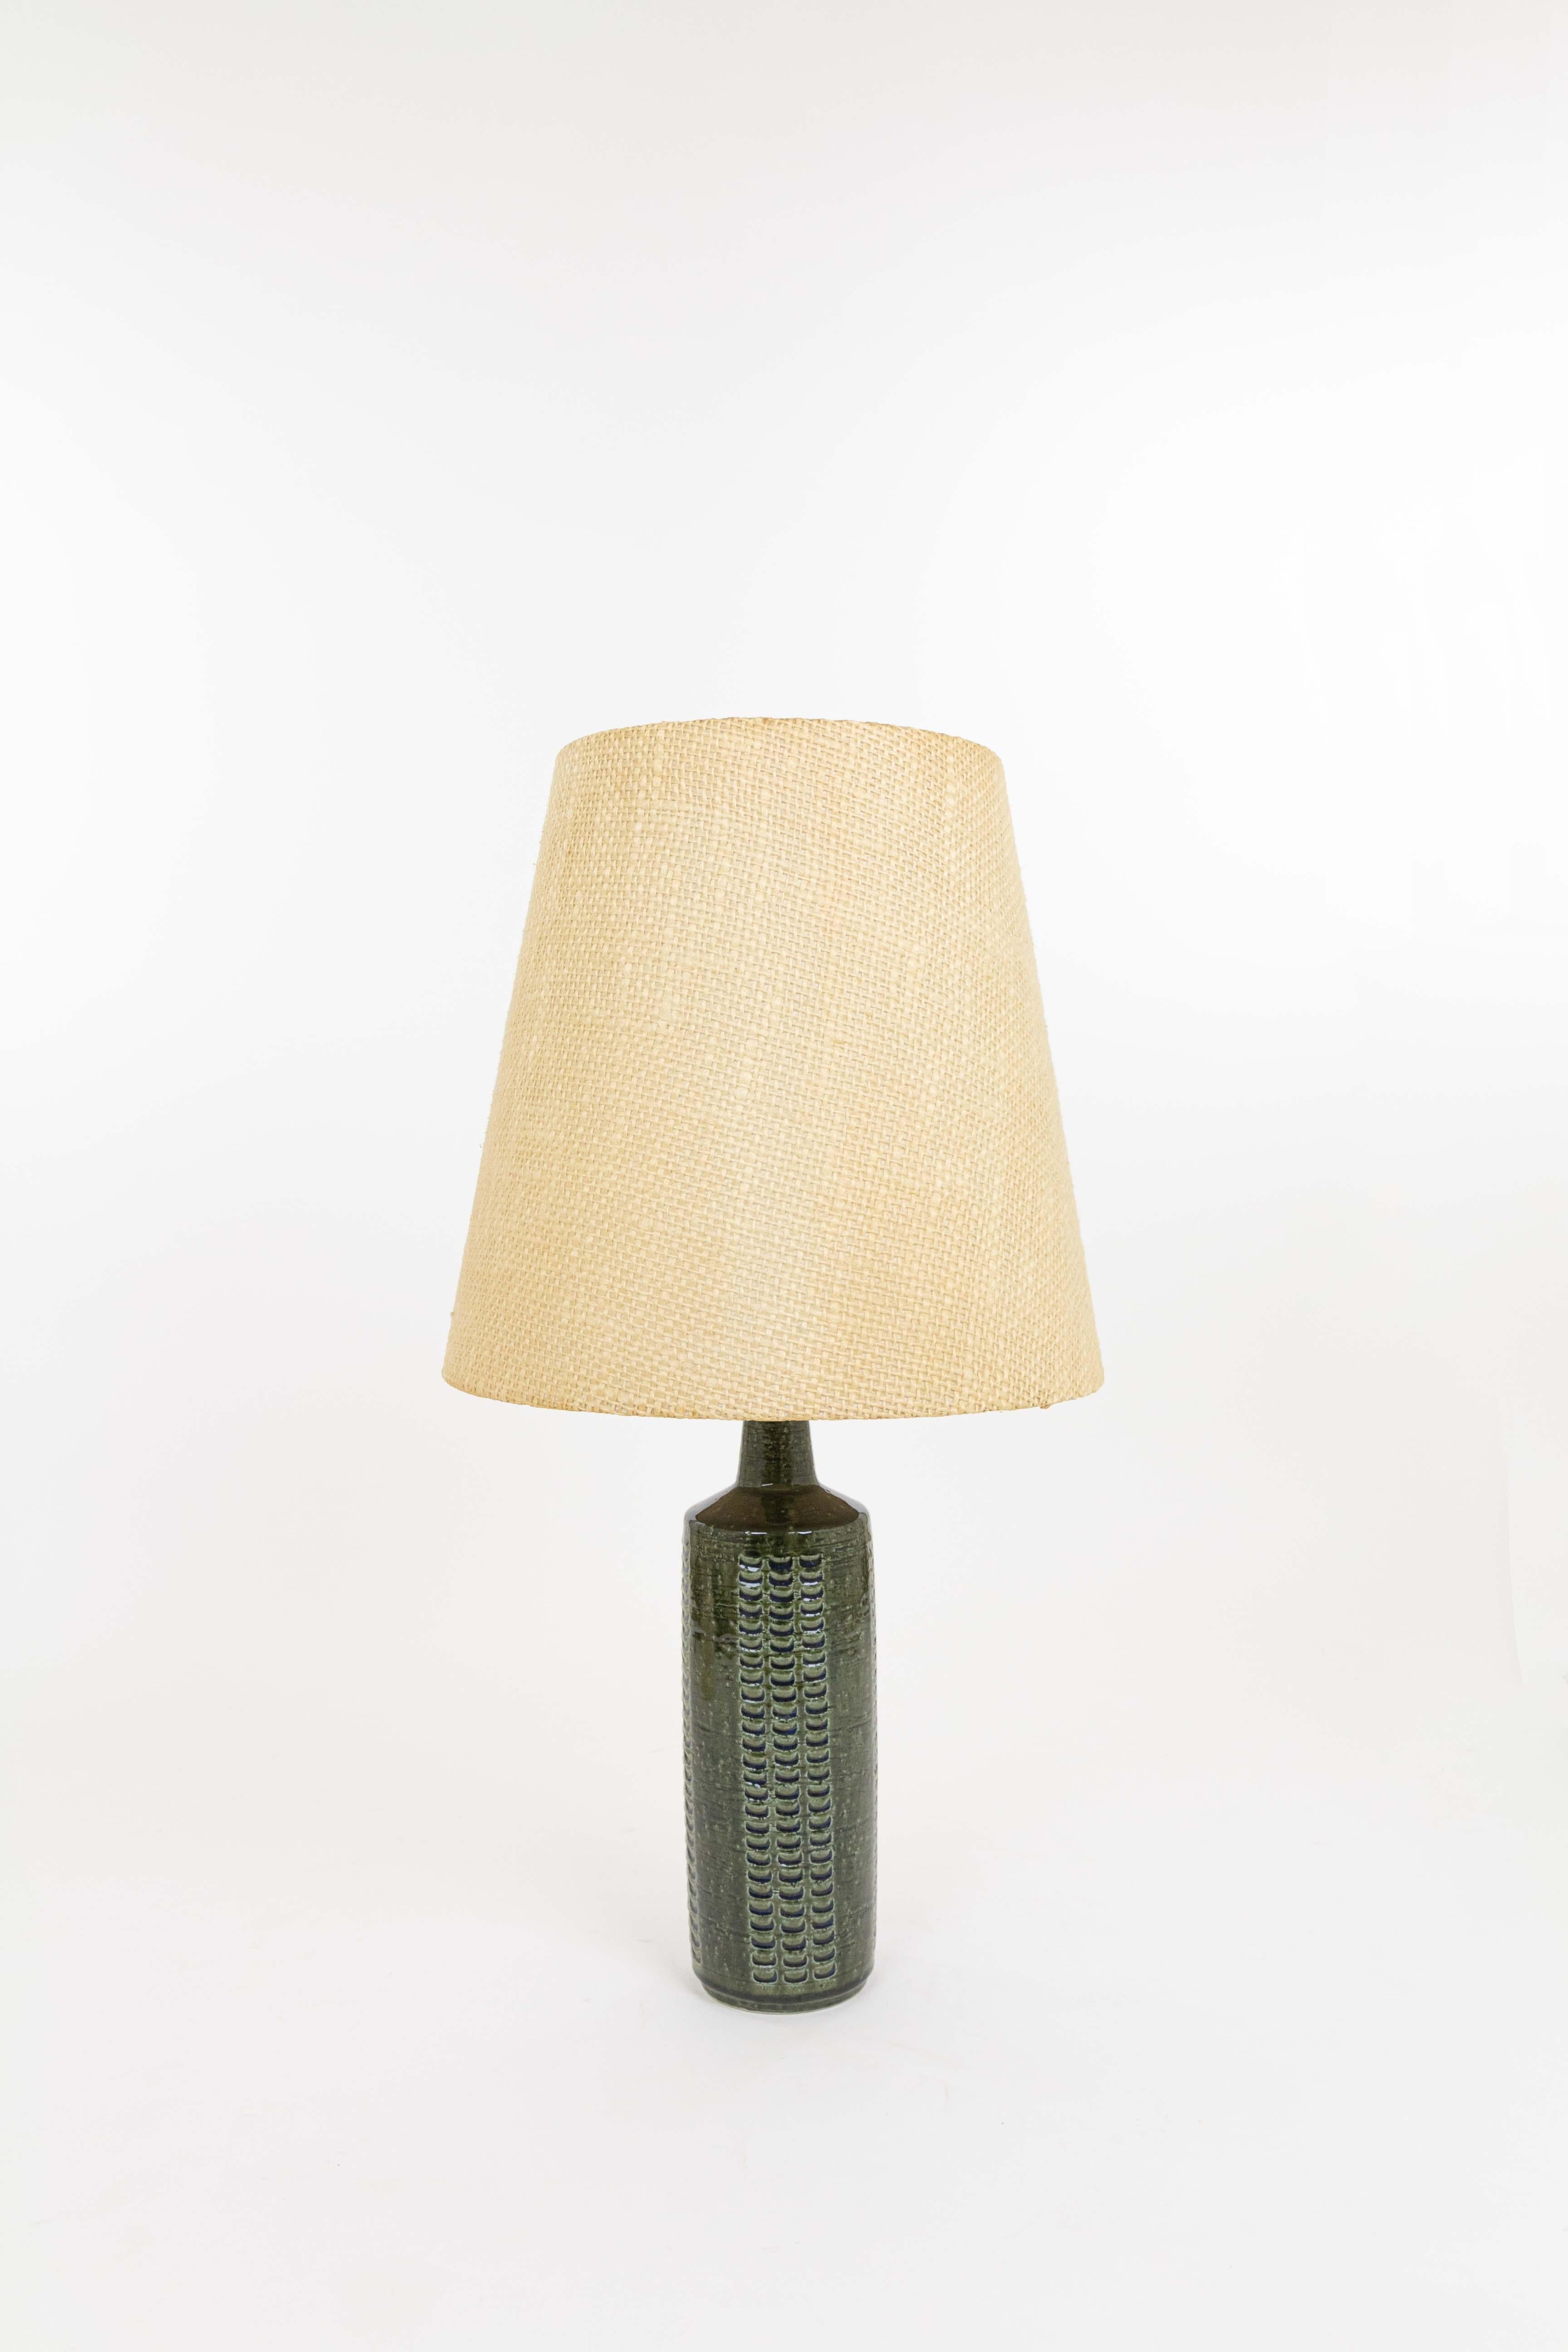 Danish Bottle Green DL/27 table lamp by Linnemann-Schmidt for Palshus, 1960s For Sale